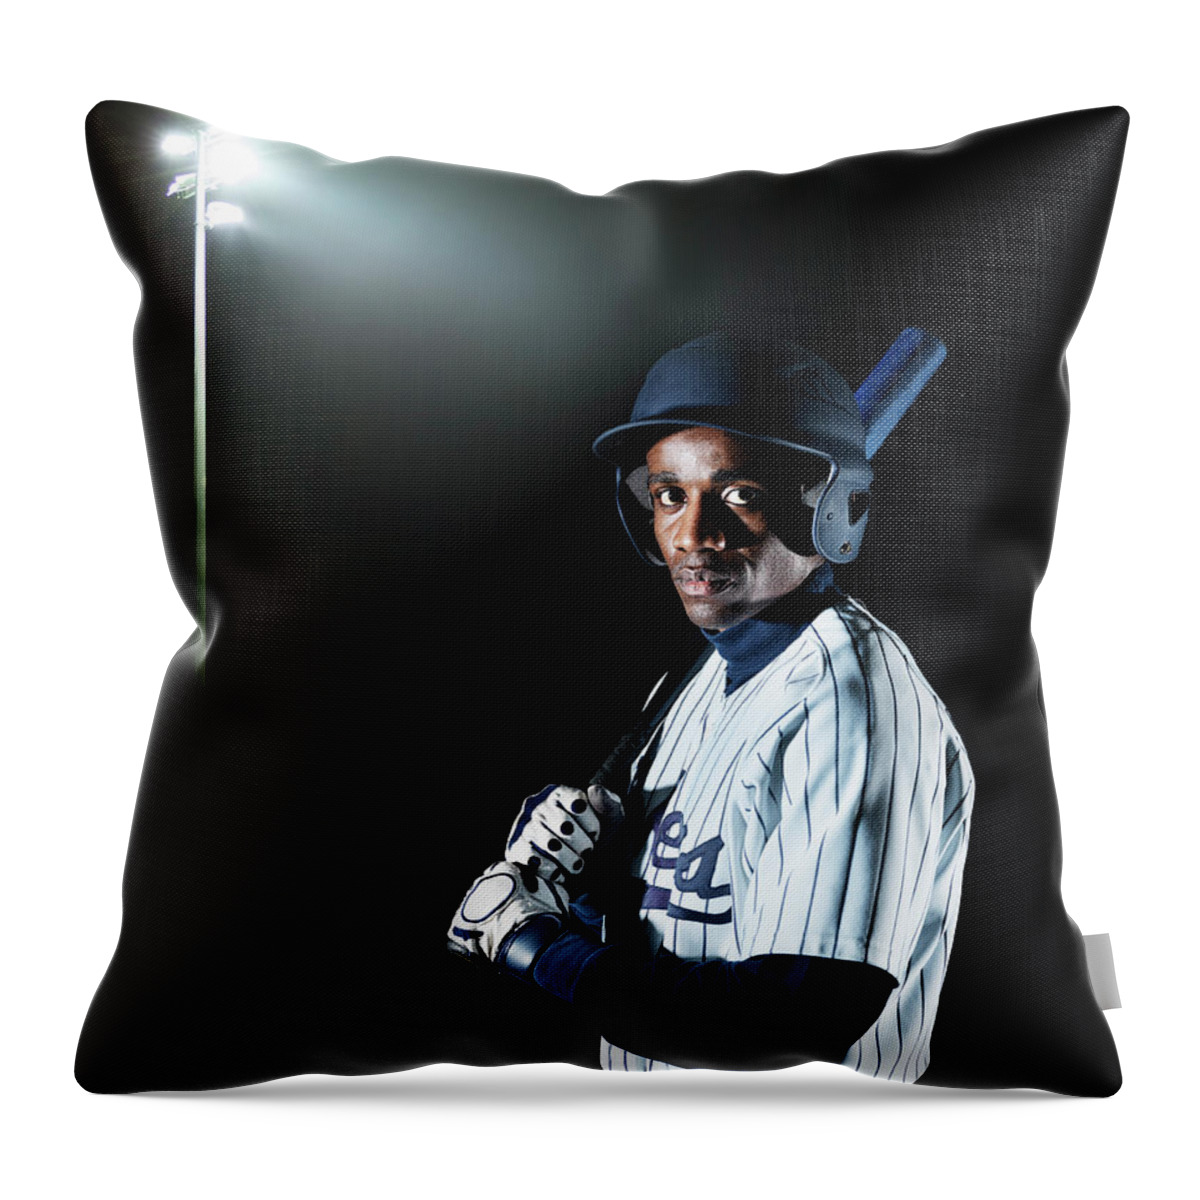 Copenhagen Throw Pillow featuring the photograph Baseball Player by Henrik Sorensen